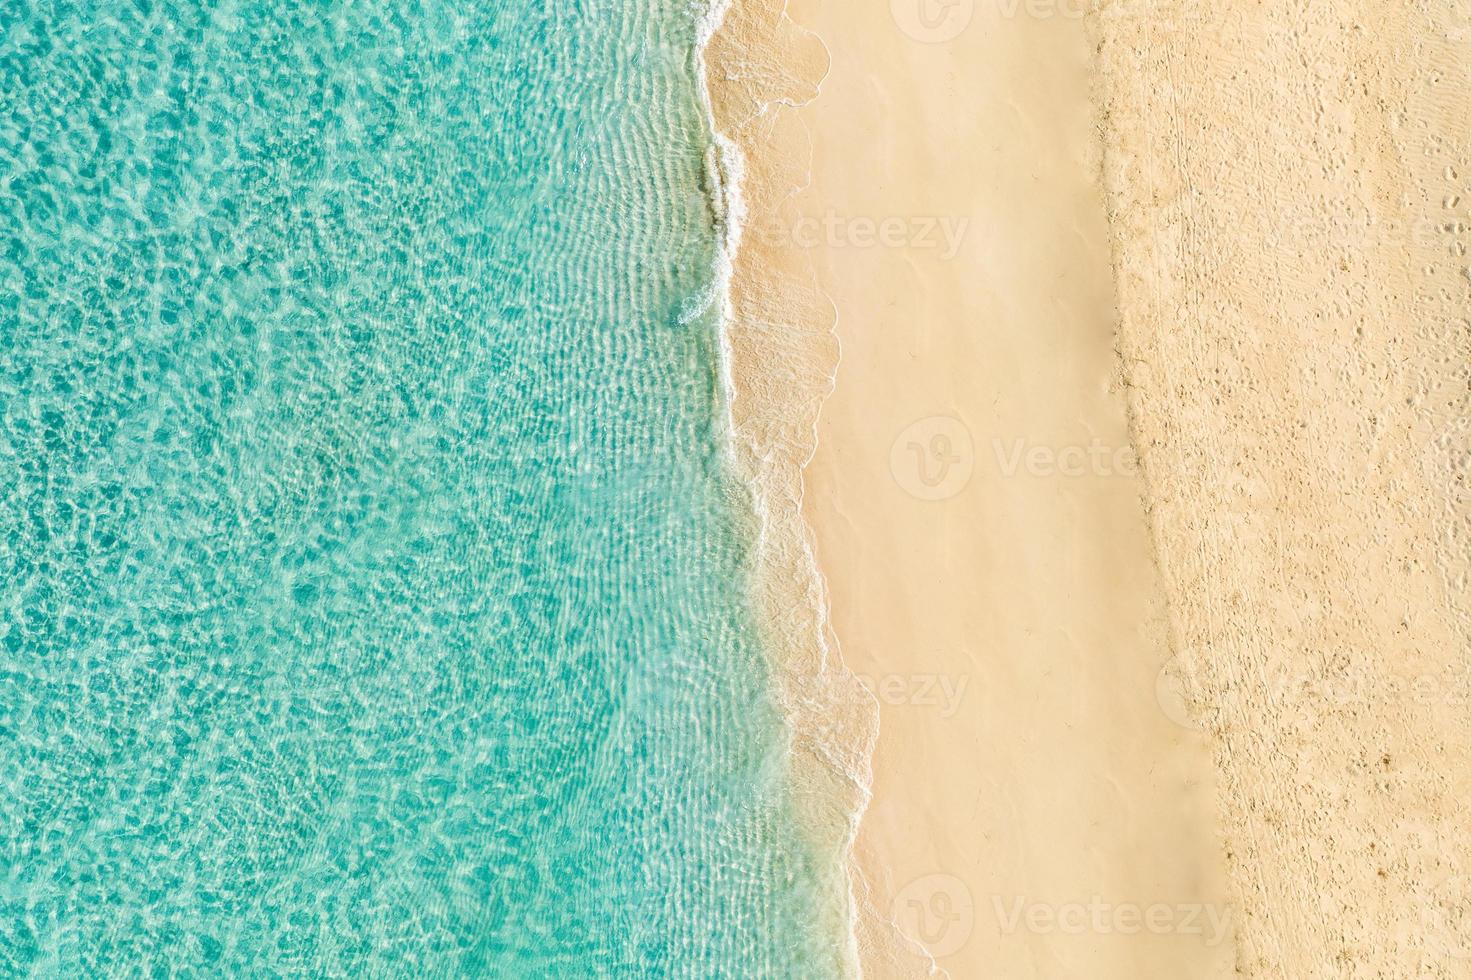 rilassante scena aerea della spiaggia, banner modello vacanze vacanze estive. onde surf con incredibile laguna blu dell'oceano, riva del mare, costa. perfetta vista dall'alto del drone aereo. tranquilla spiaggia luminosa, mare foto